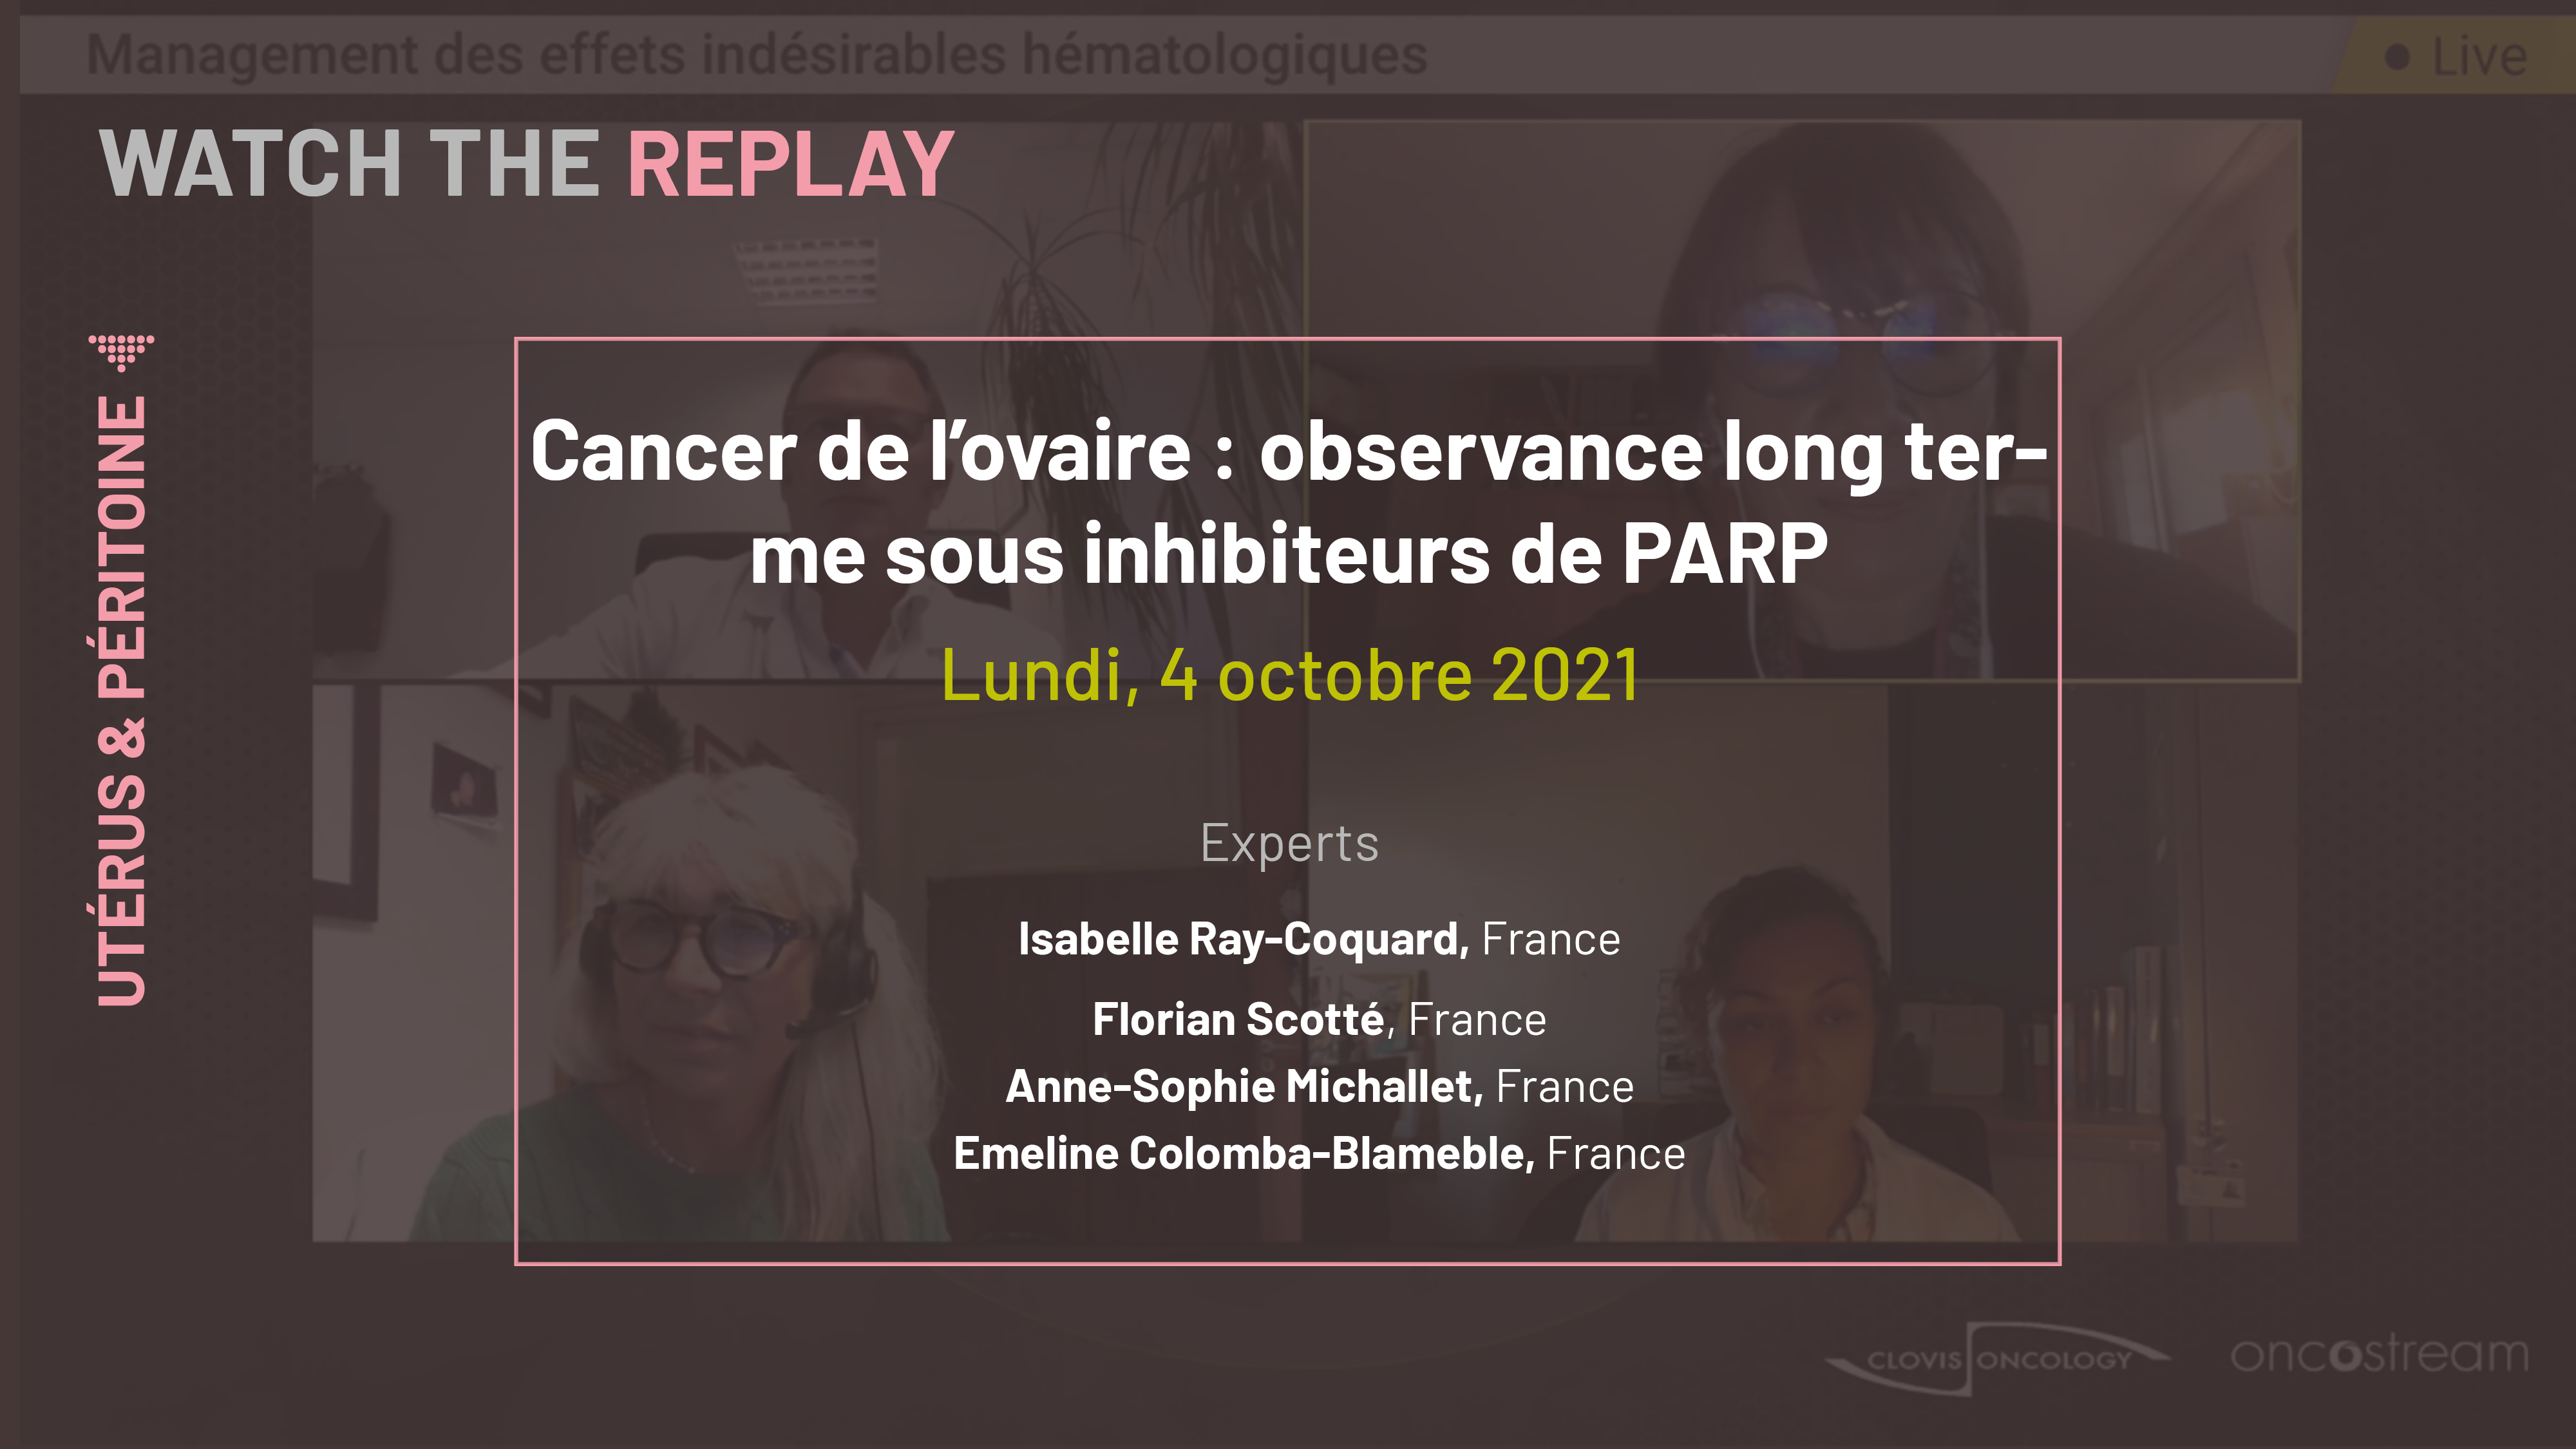 Cancer de l'ovaire : observance long terme sous inhibiteurs de PARP